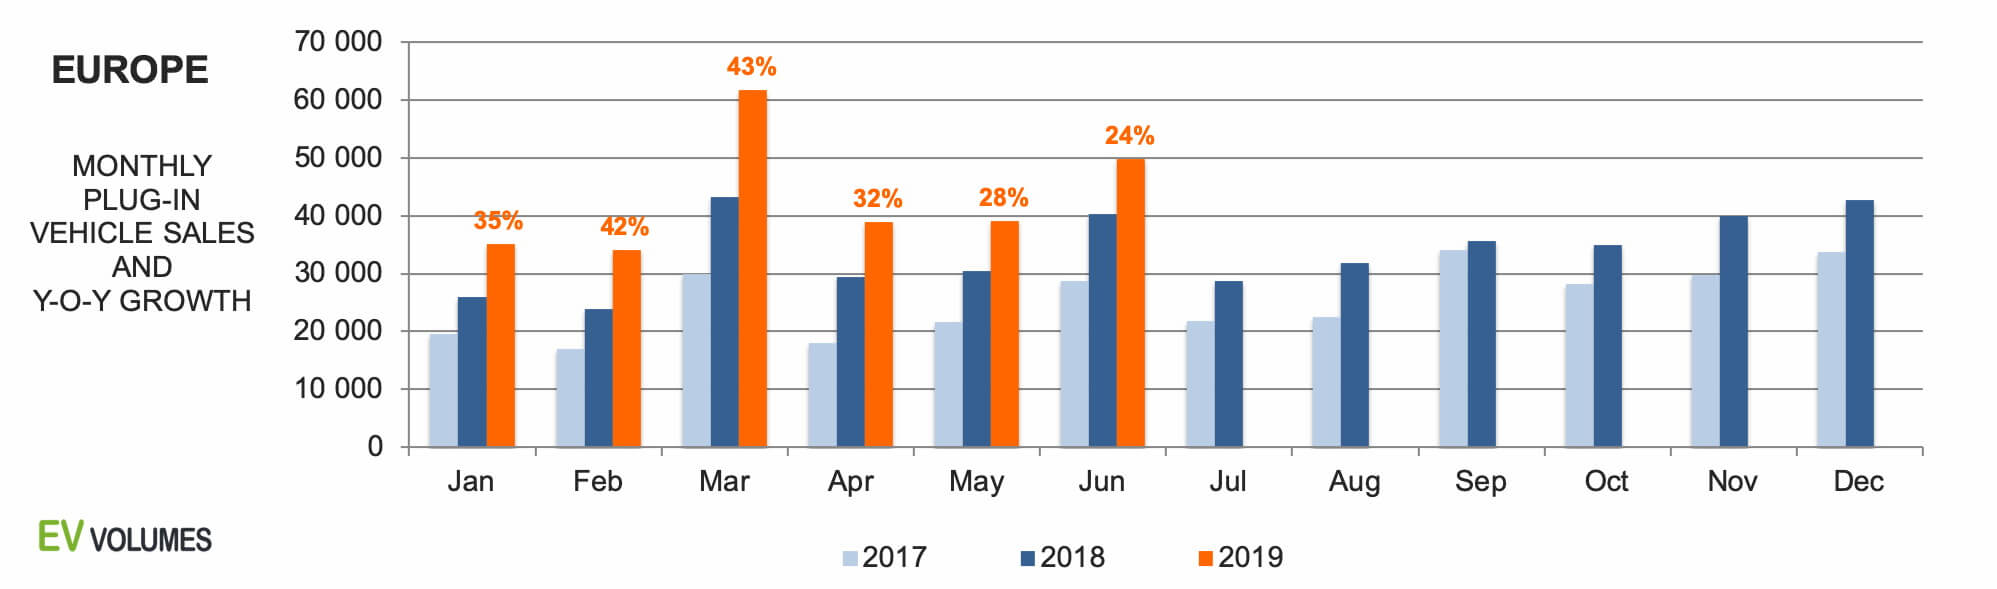 Продажи электромобилей и плагин-гибридов в Европе с 2017 по 2019 (H1)